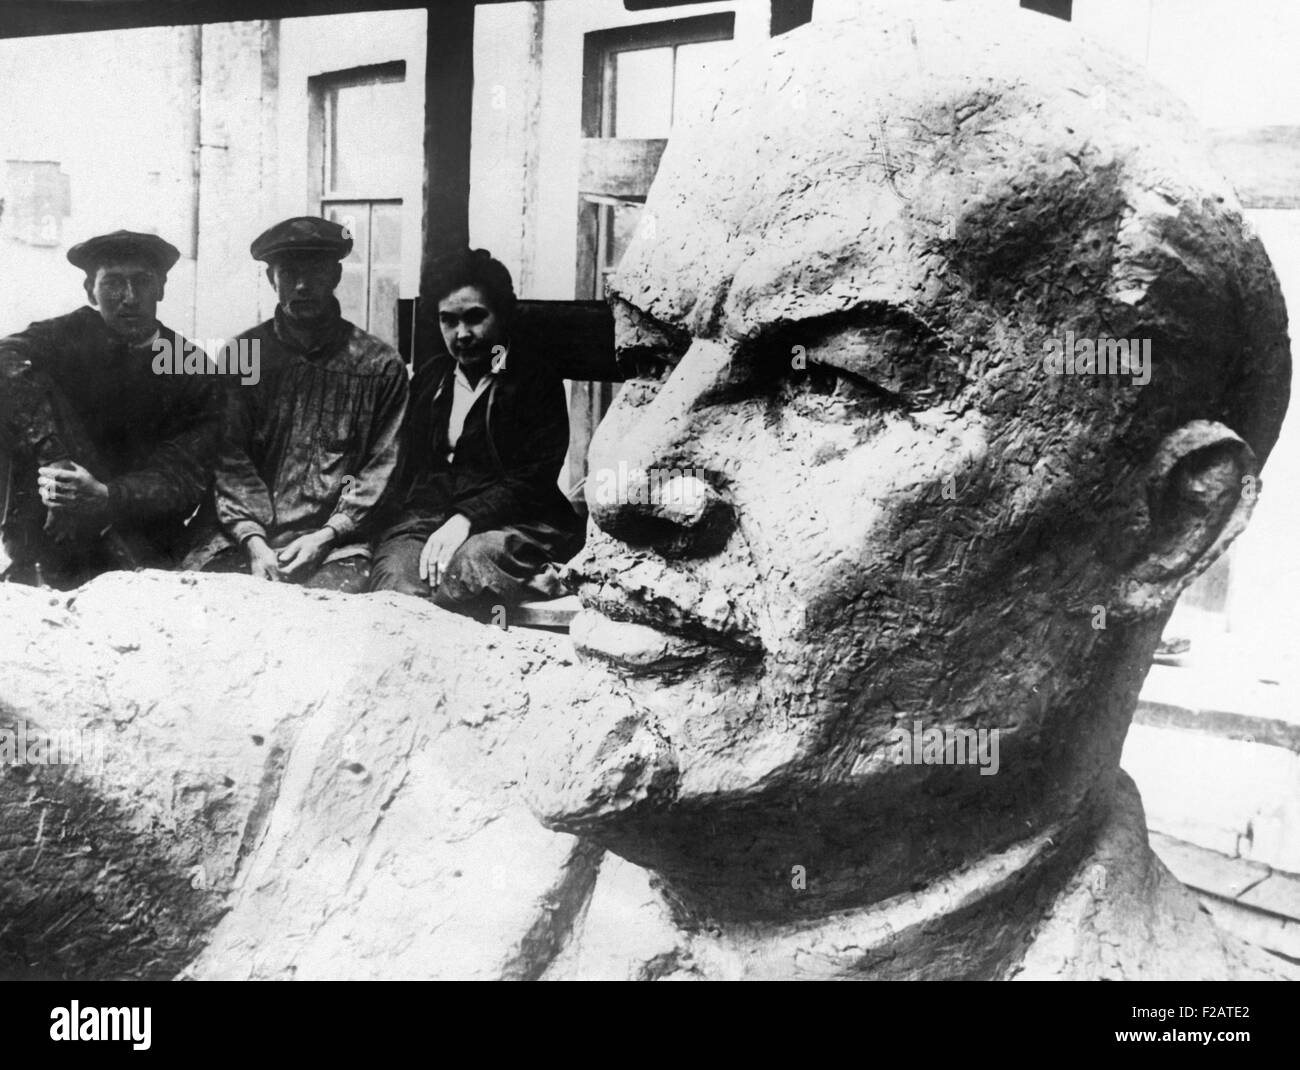 Colosal estatua de Lenin, líder de la revolución bolchevique fue develado en Moscú. El 21 de enero de 1929. Era parte de las ceremonias en el 5º aniversario de su muerte. (CSU 2015 11 1690) Foto de stock